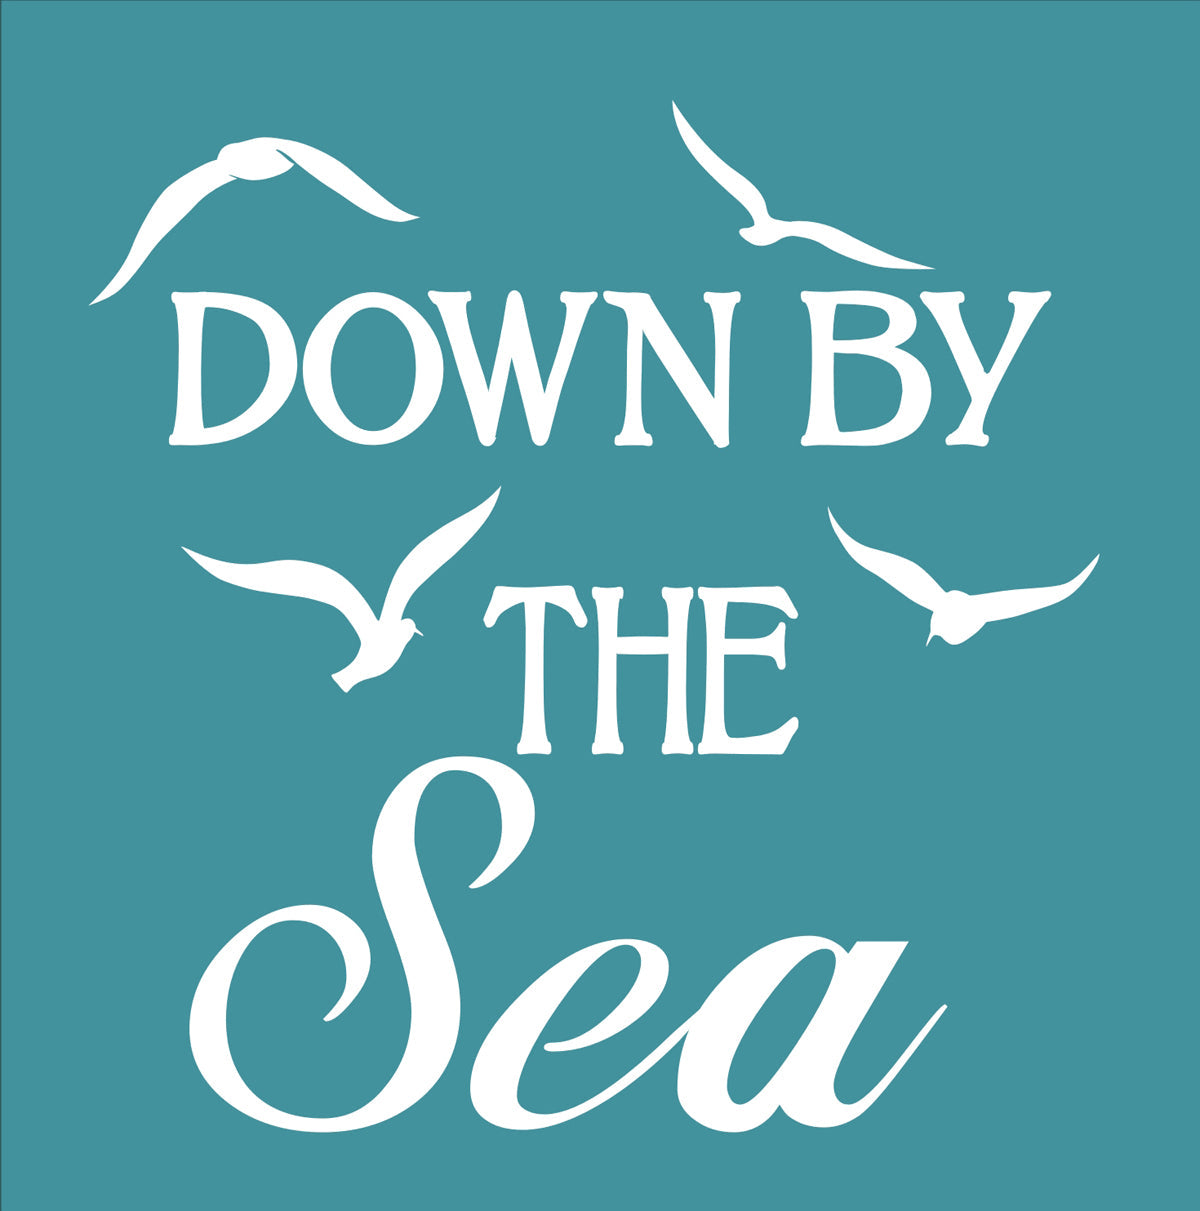 Down By The Sea Stencil - Superior Stencils